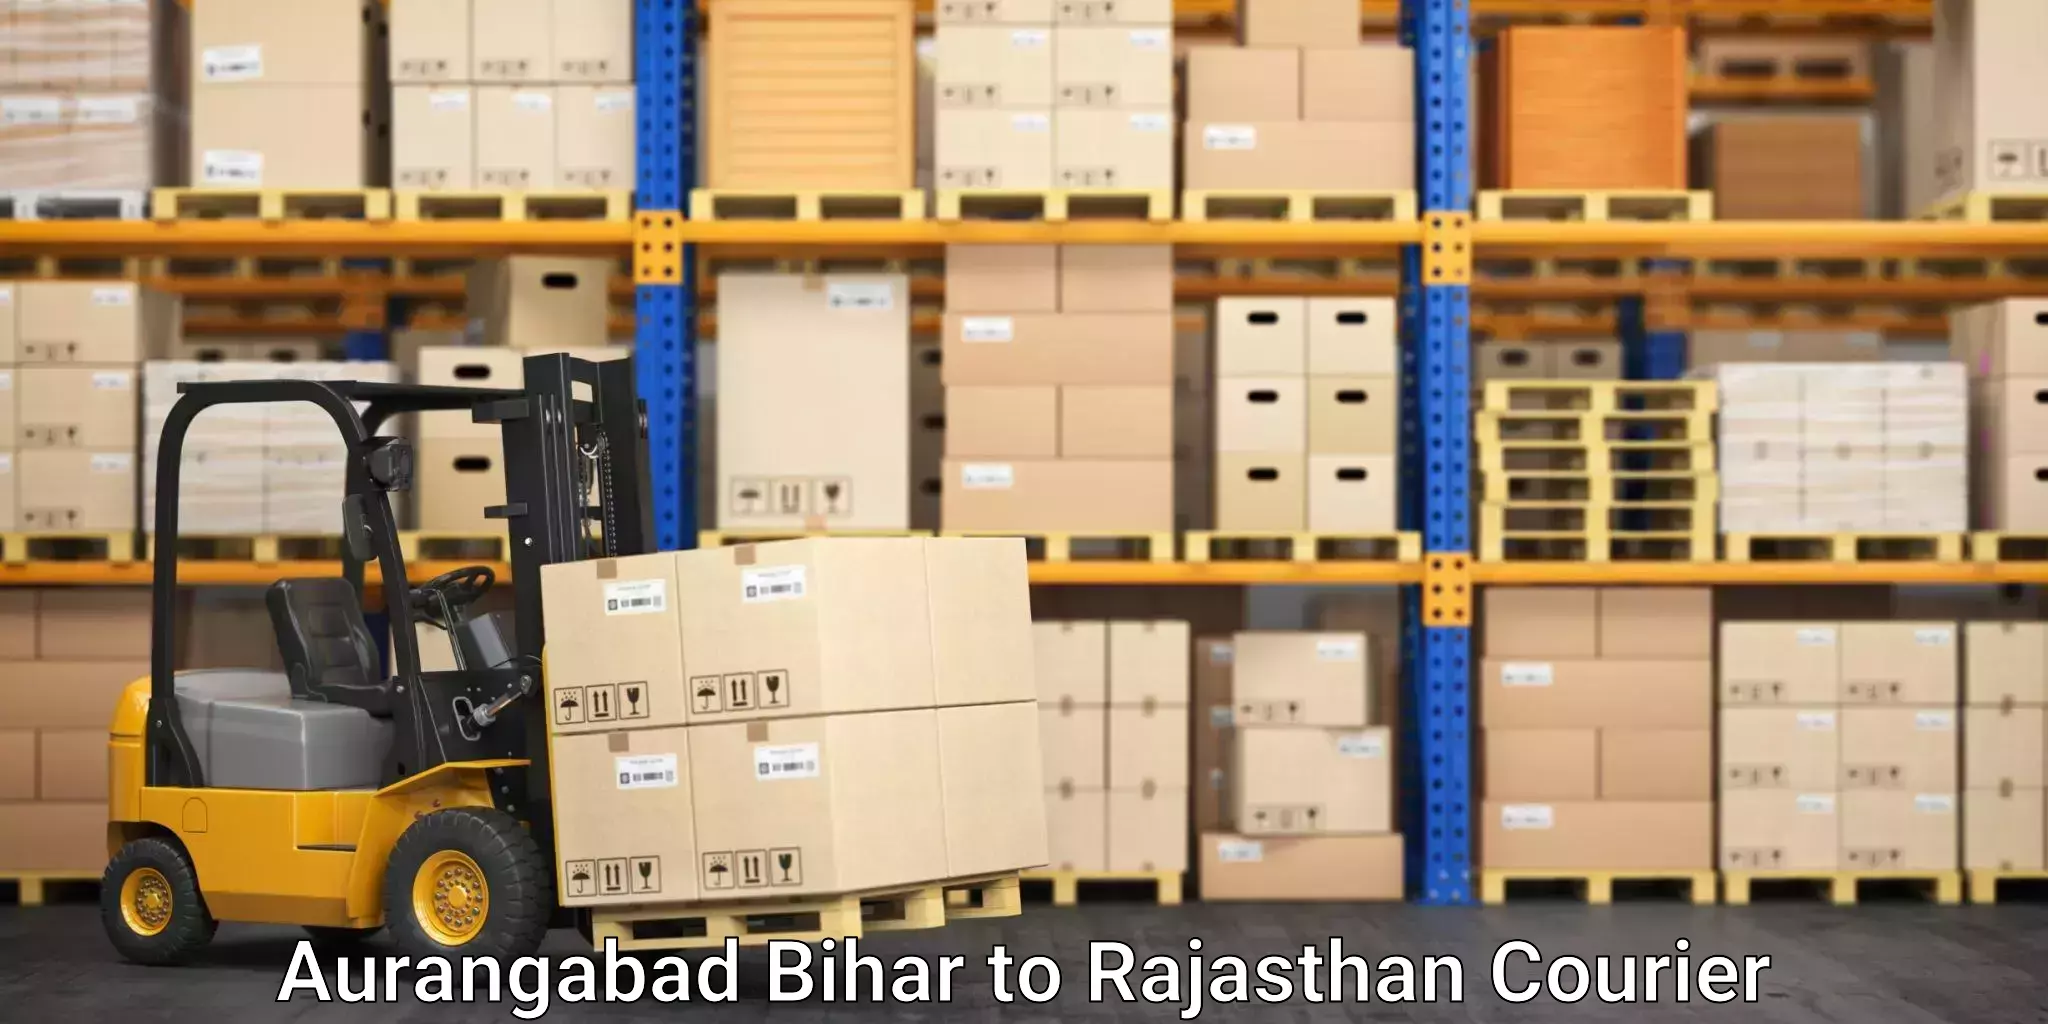 Efficient relocation services in Aurangabad Bihar to Nasirabad